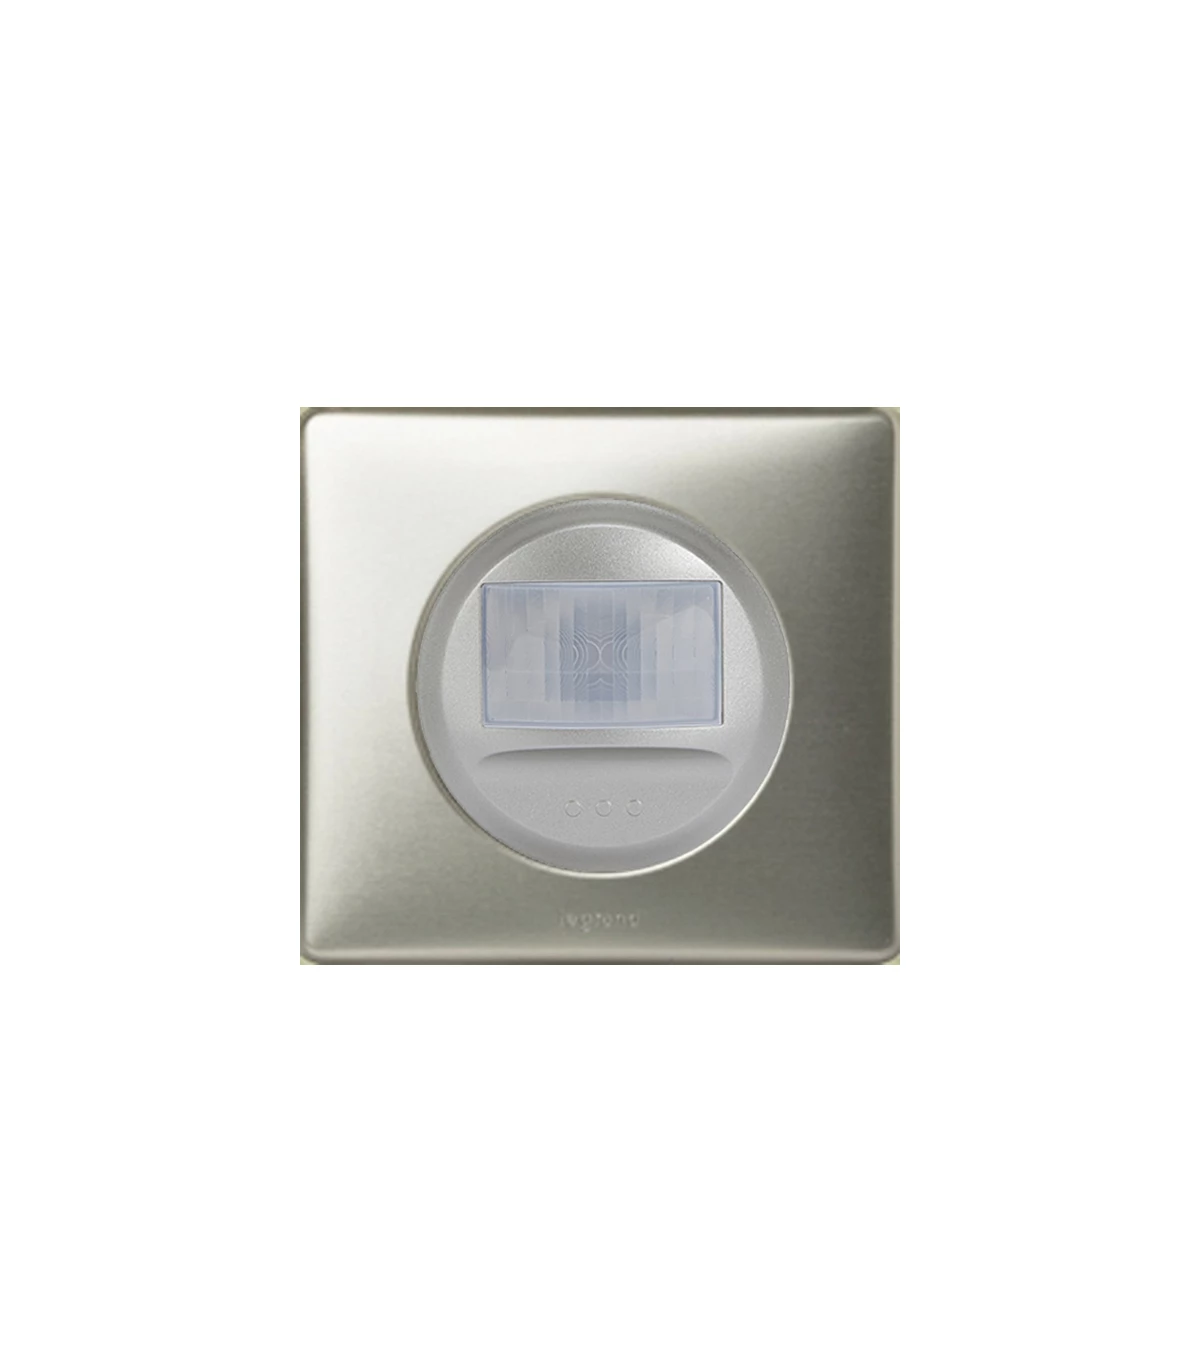 Interrupteur automatique universel 2 fils 100W LED Mosaic blanc